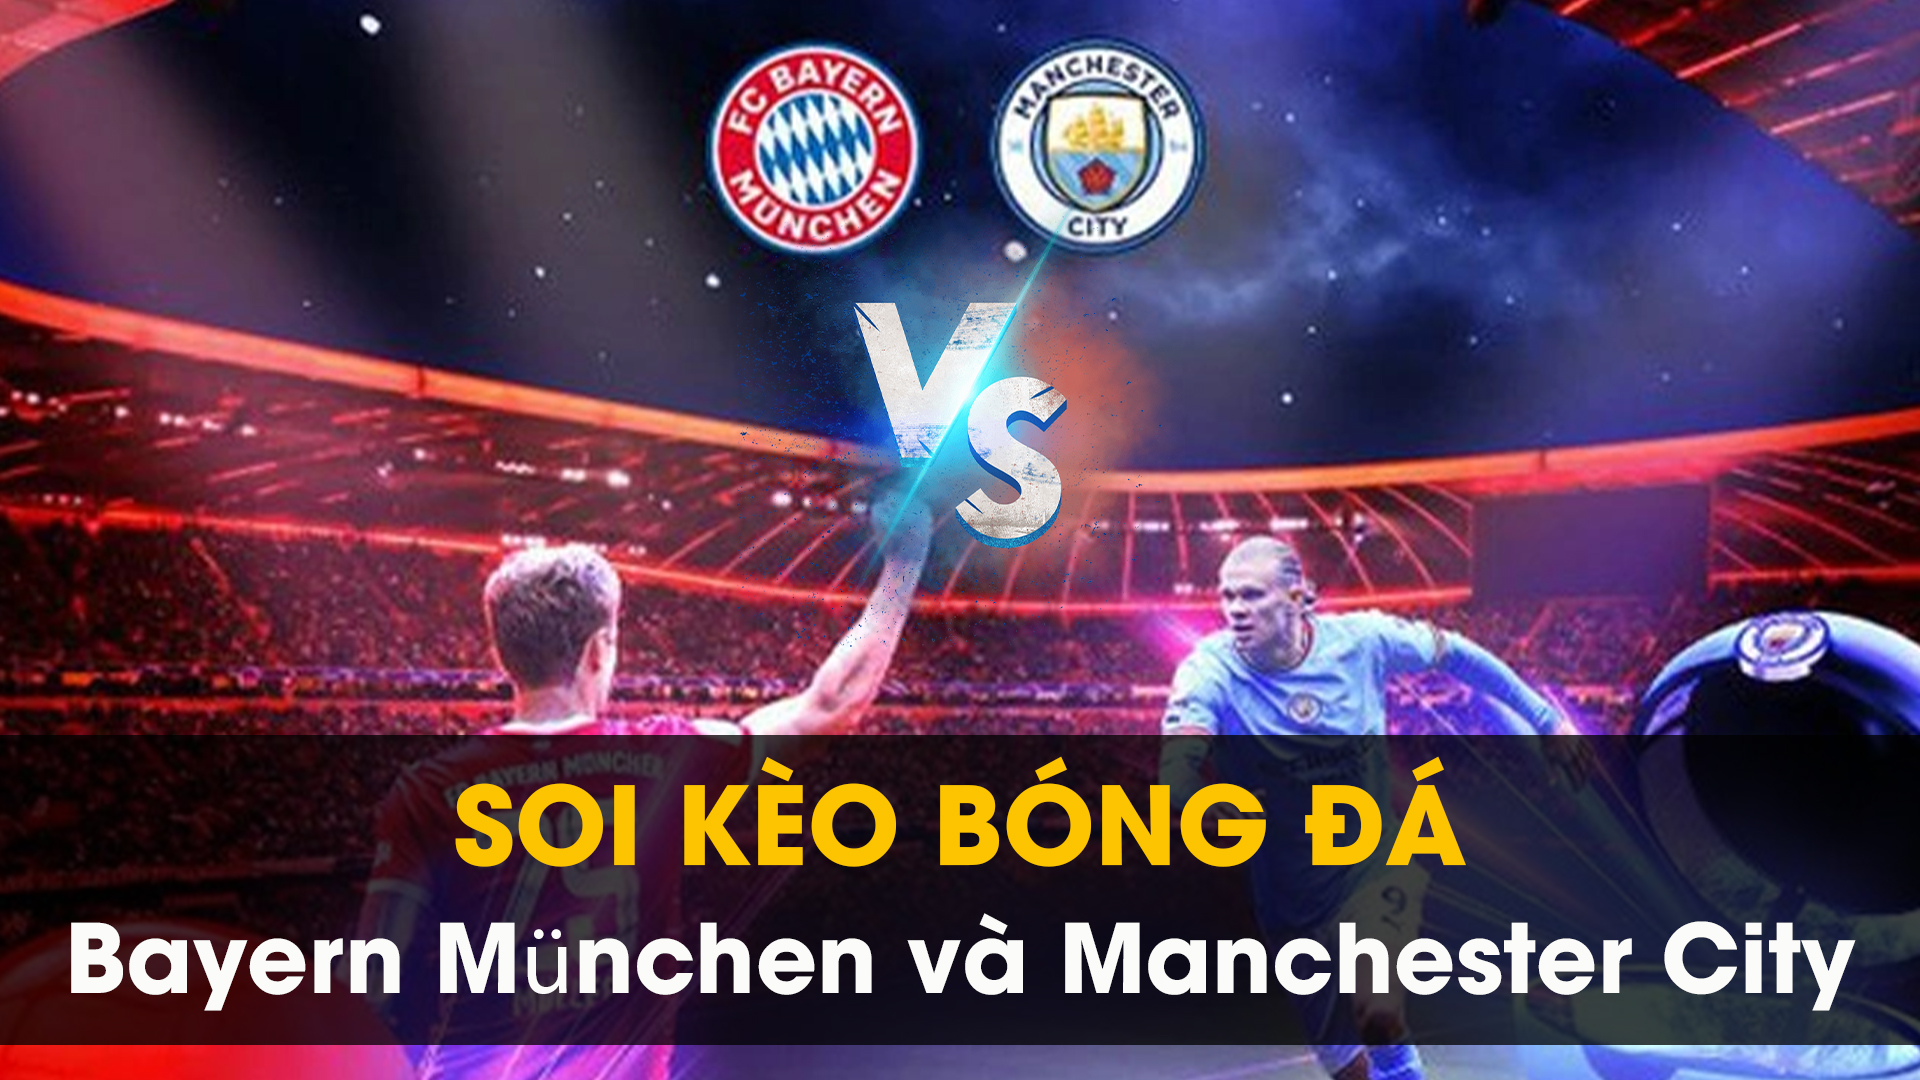 Soi kèo bóng đá giữa Bayern München và Manchester City 01